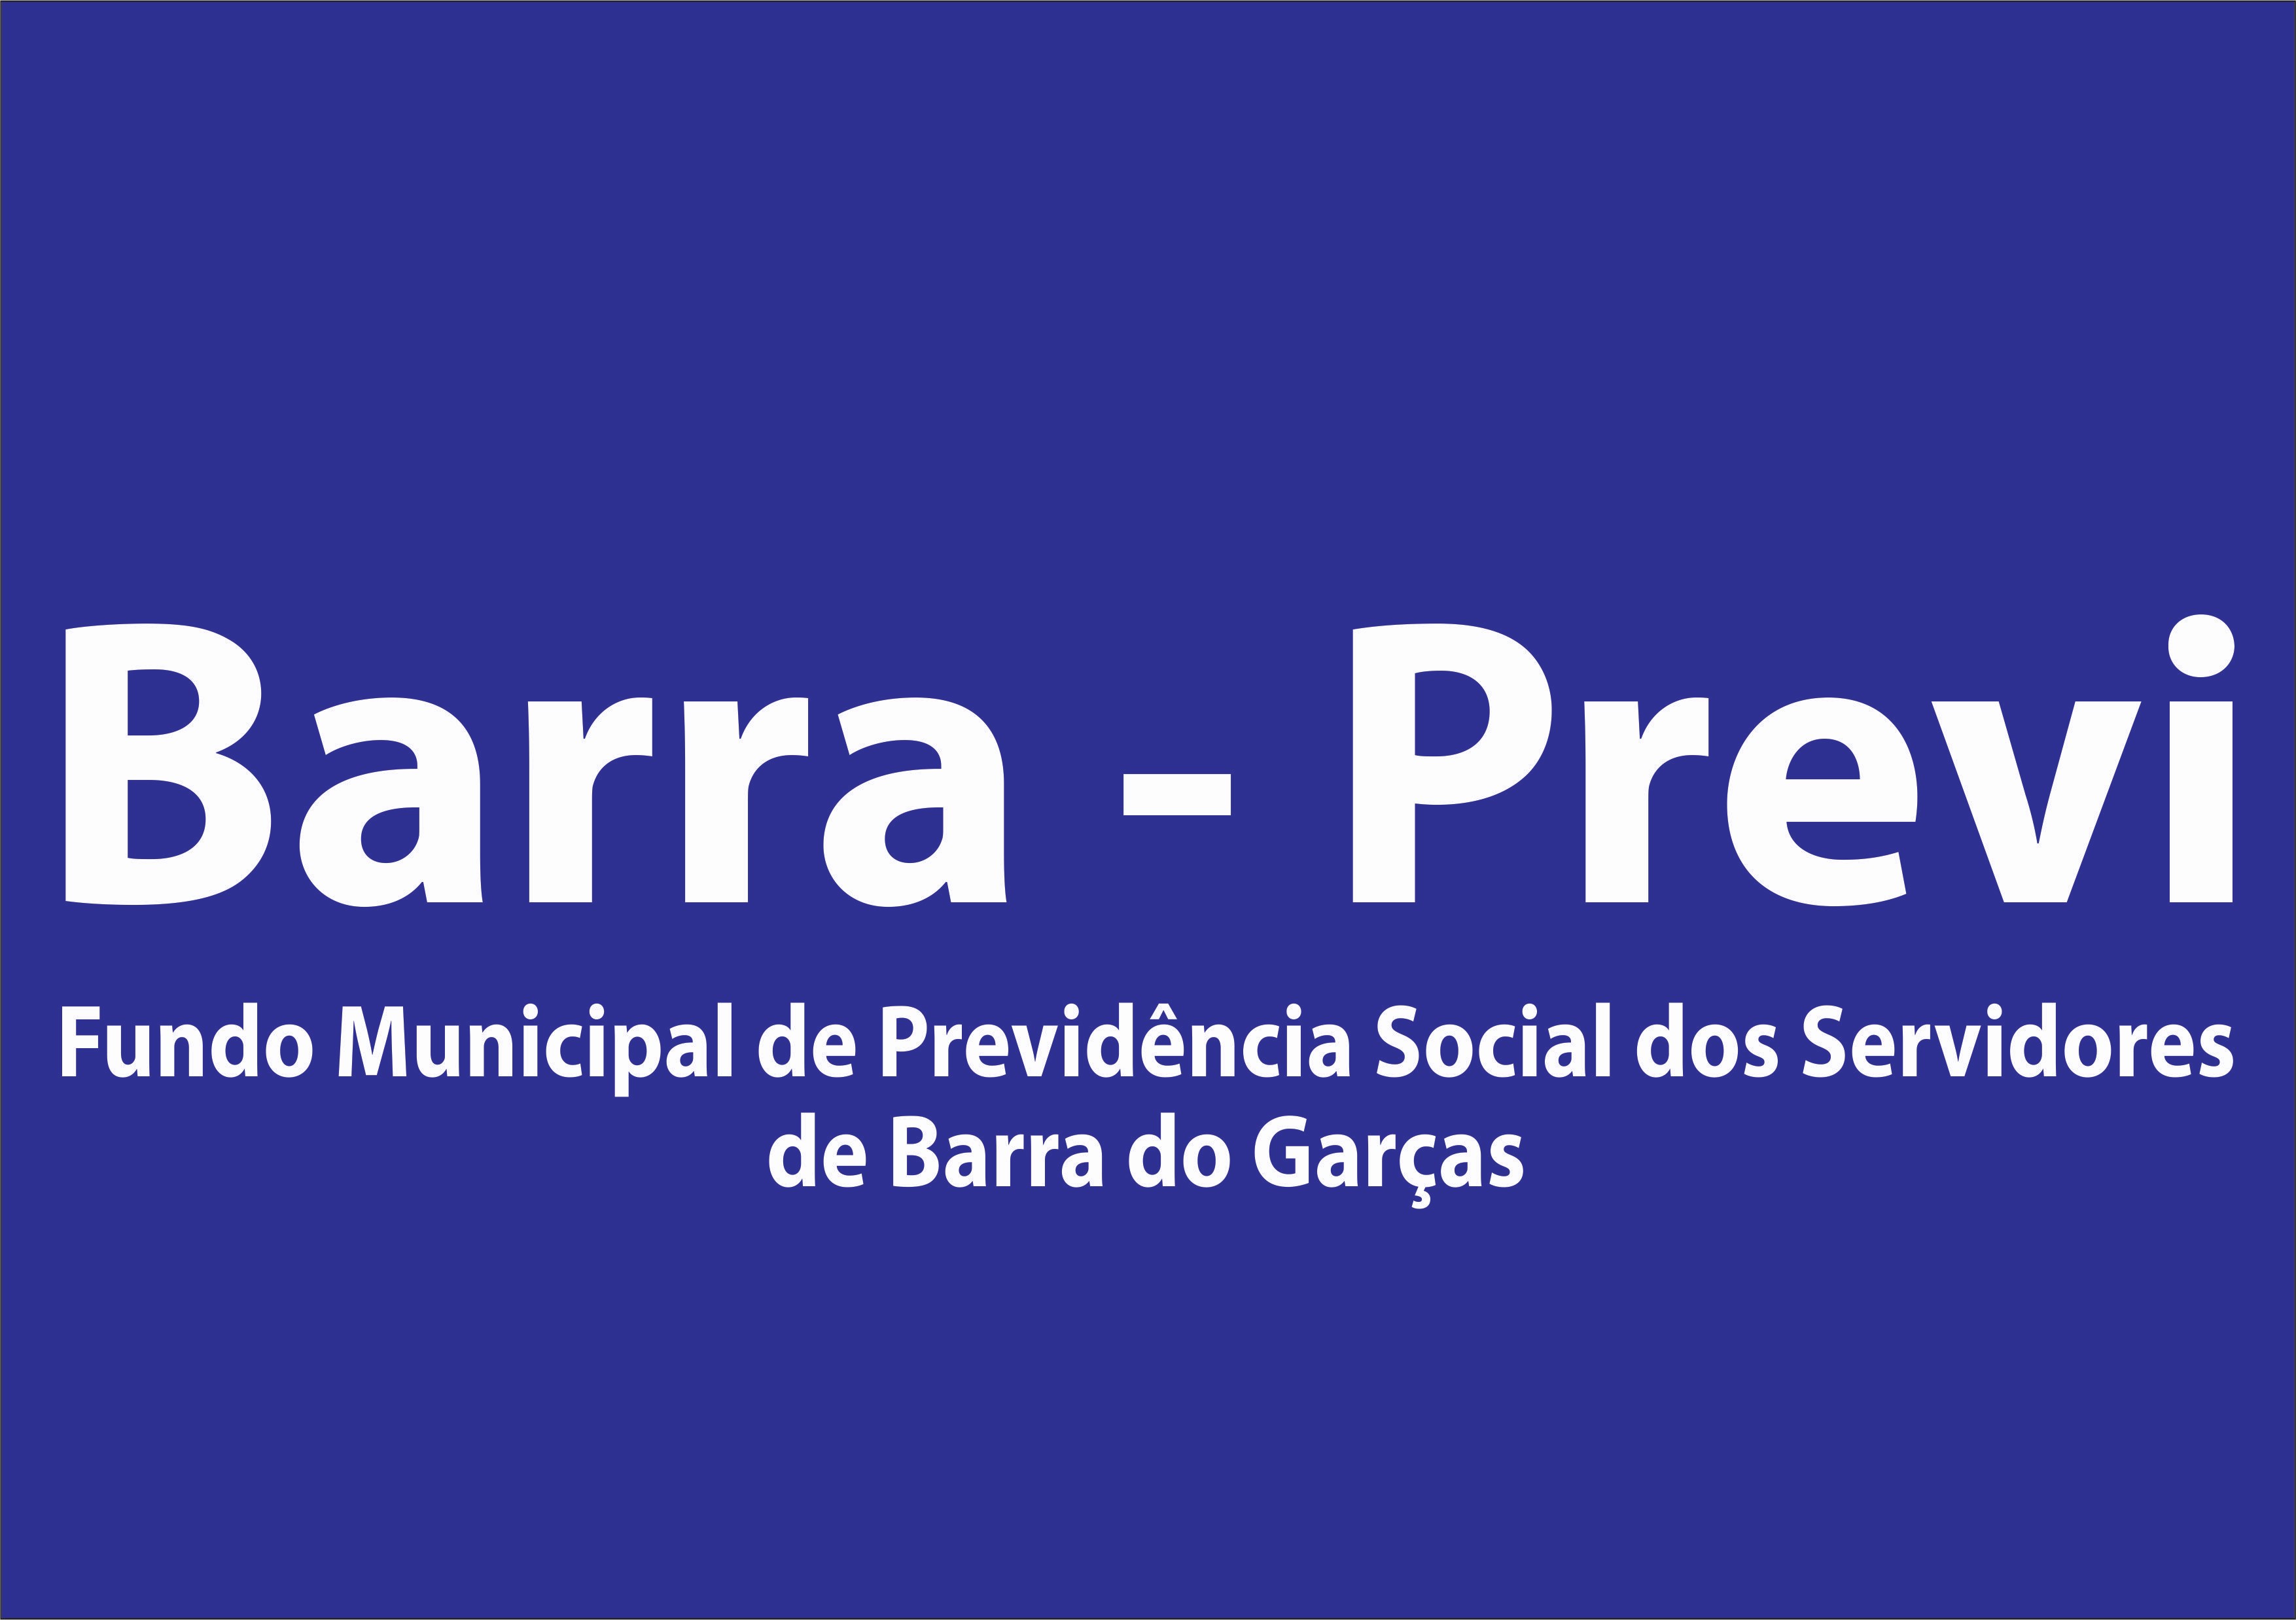 Homologação do censo previdenciário do Barra-Previ começa a ser realizada